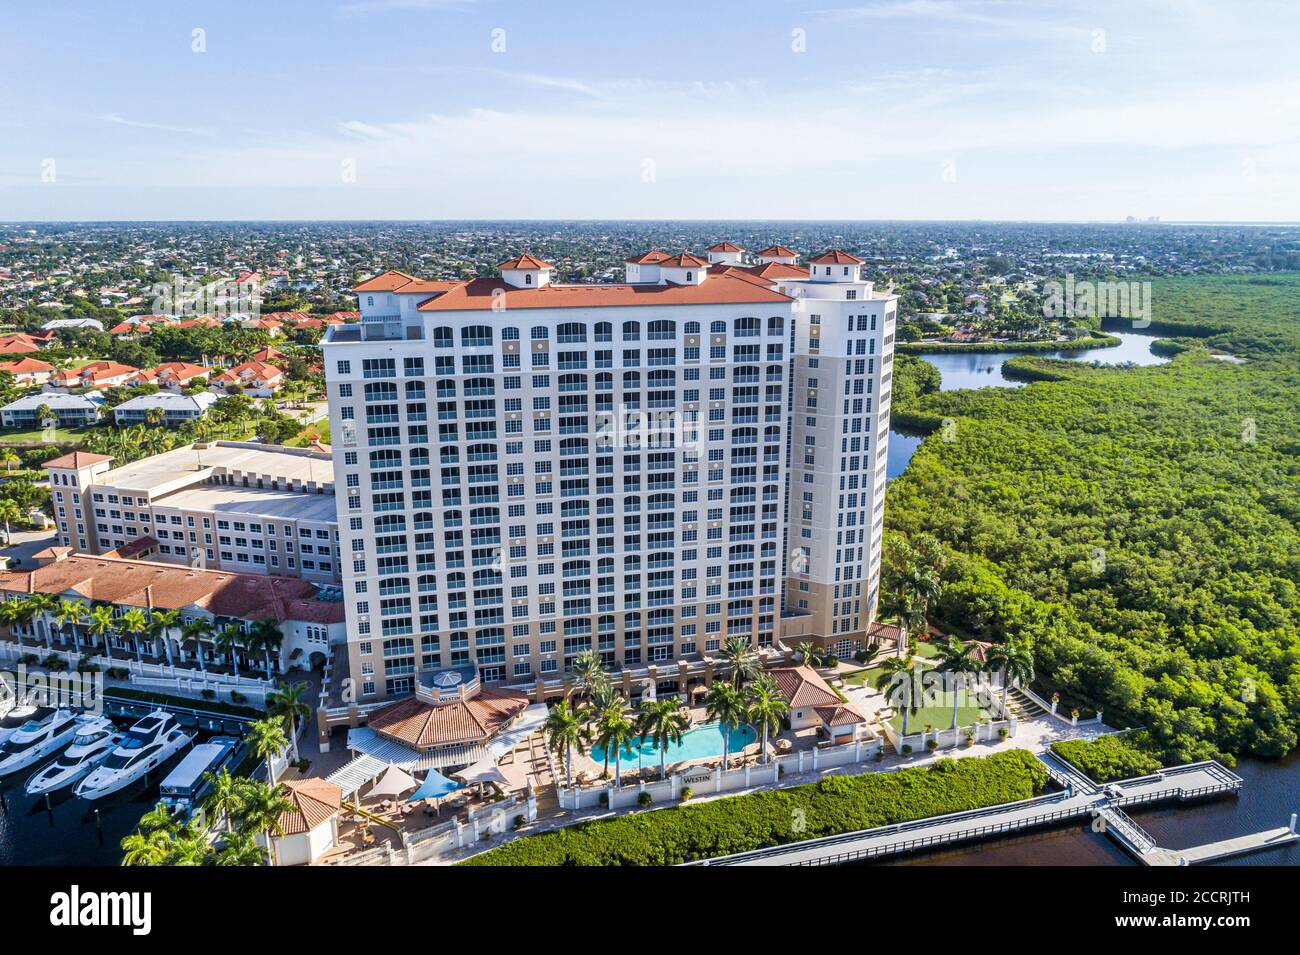 Cape Coral Florida, das Westin Cape Coral Resort in Marina Village, Hotelhotels in Motelhotels, Luftaufnahme aus der Vogelperspektive, Besucher Stockfoto